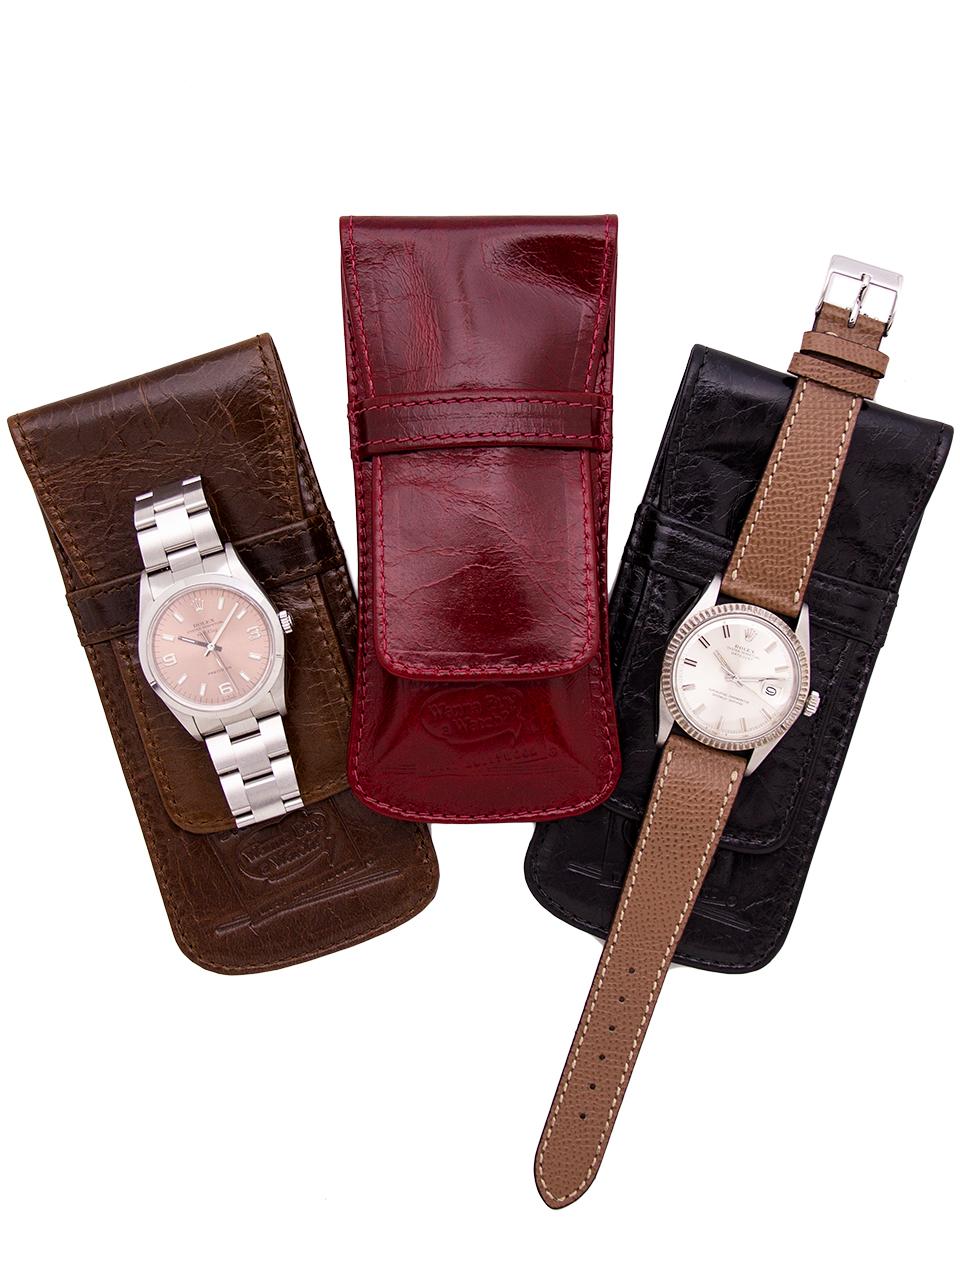 1940s wrist watch